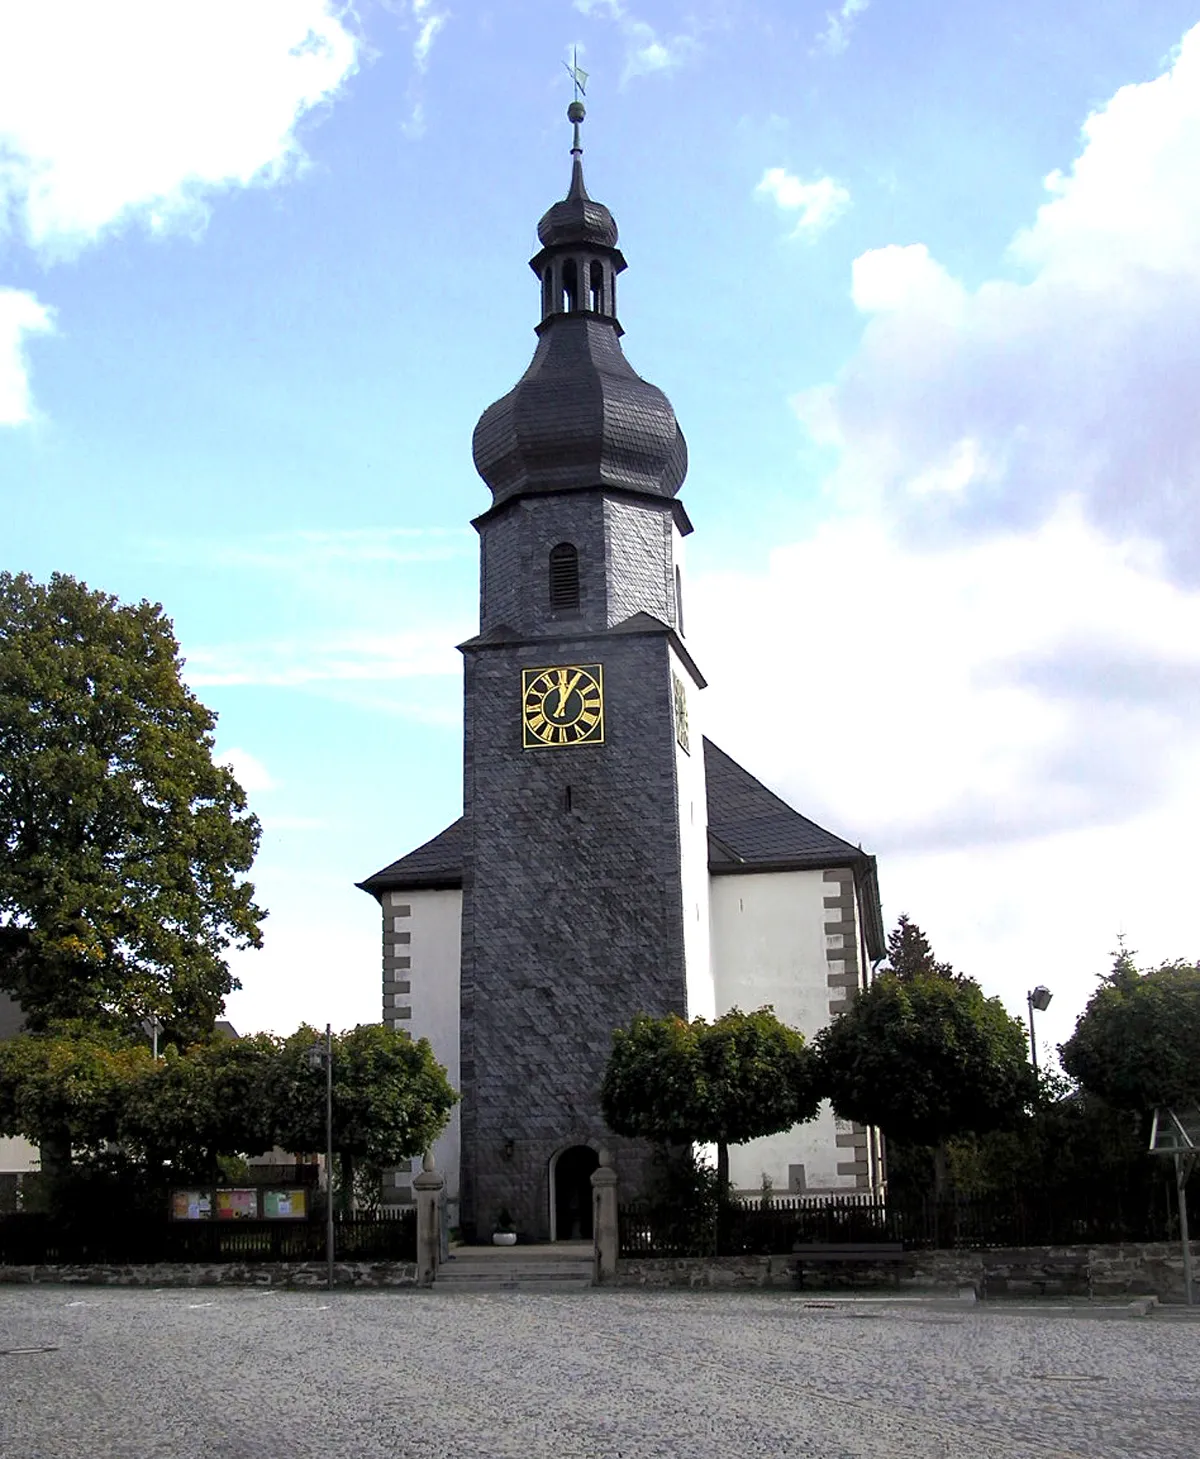 Photo showing: Description: Evangelisch-lutherische Pfarrkirche in Konradsreuth, Landkreis Hof, Oberfranken

Source:Fotografiert am 3. Oktober 2004
Author: Schubbay